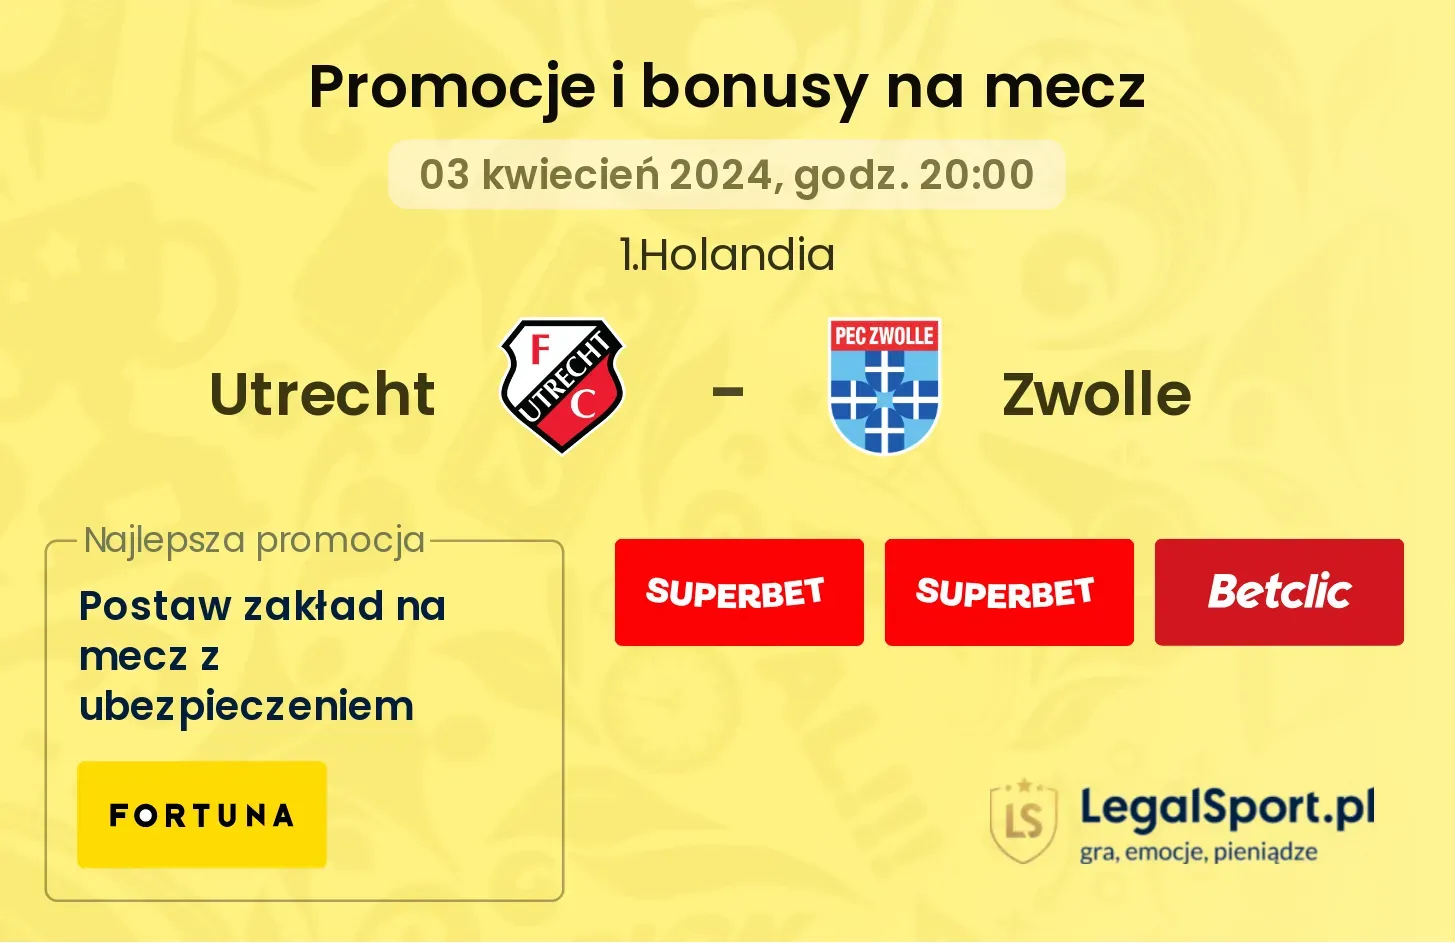 Utrecht - Zwolle promocje bonusy na mecz